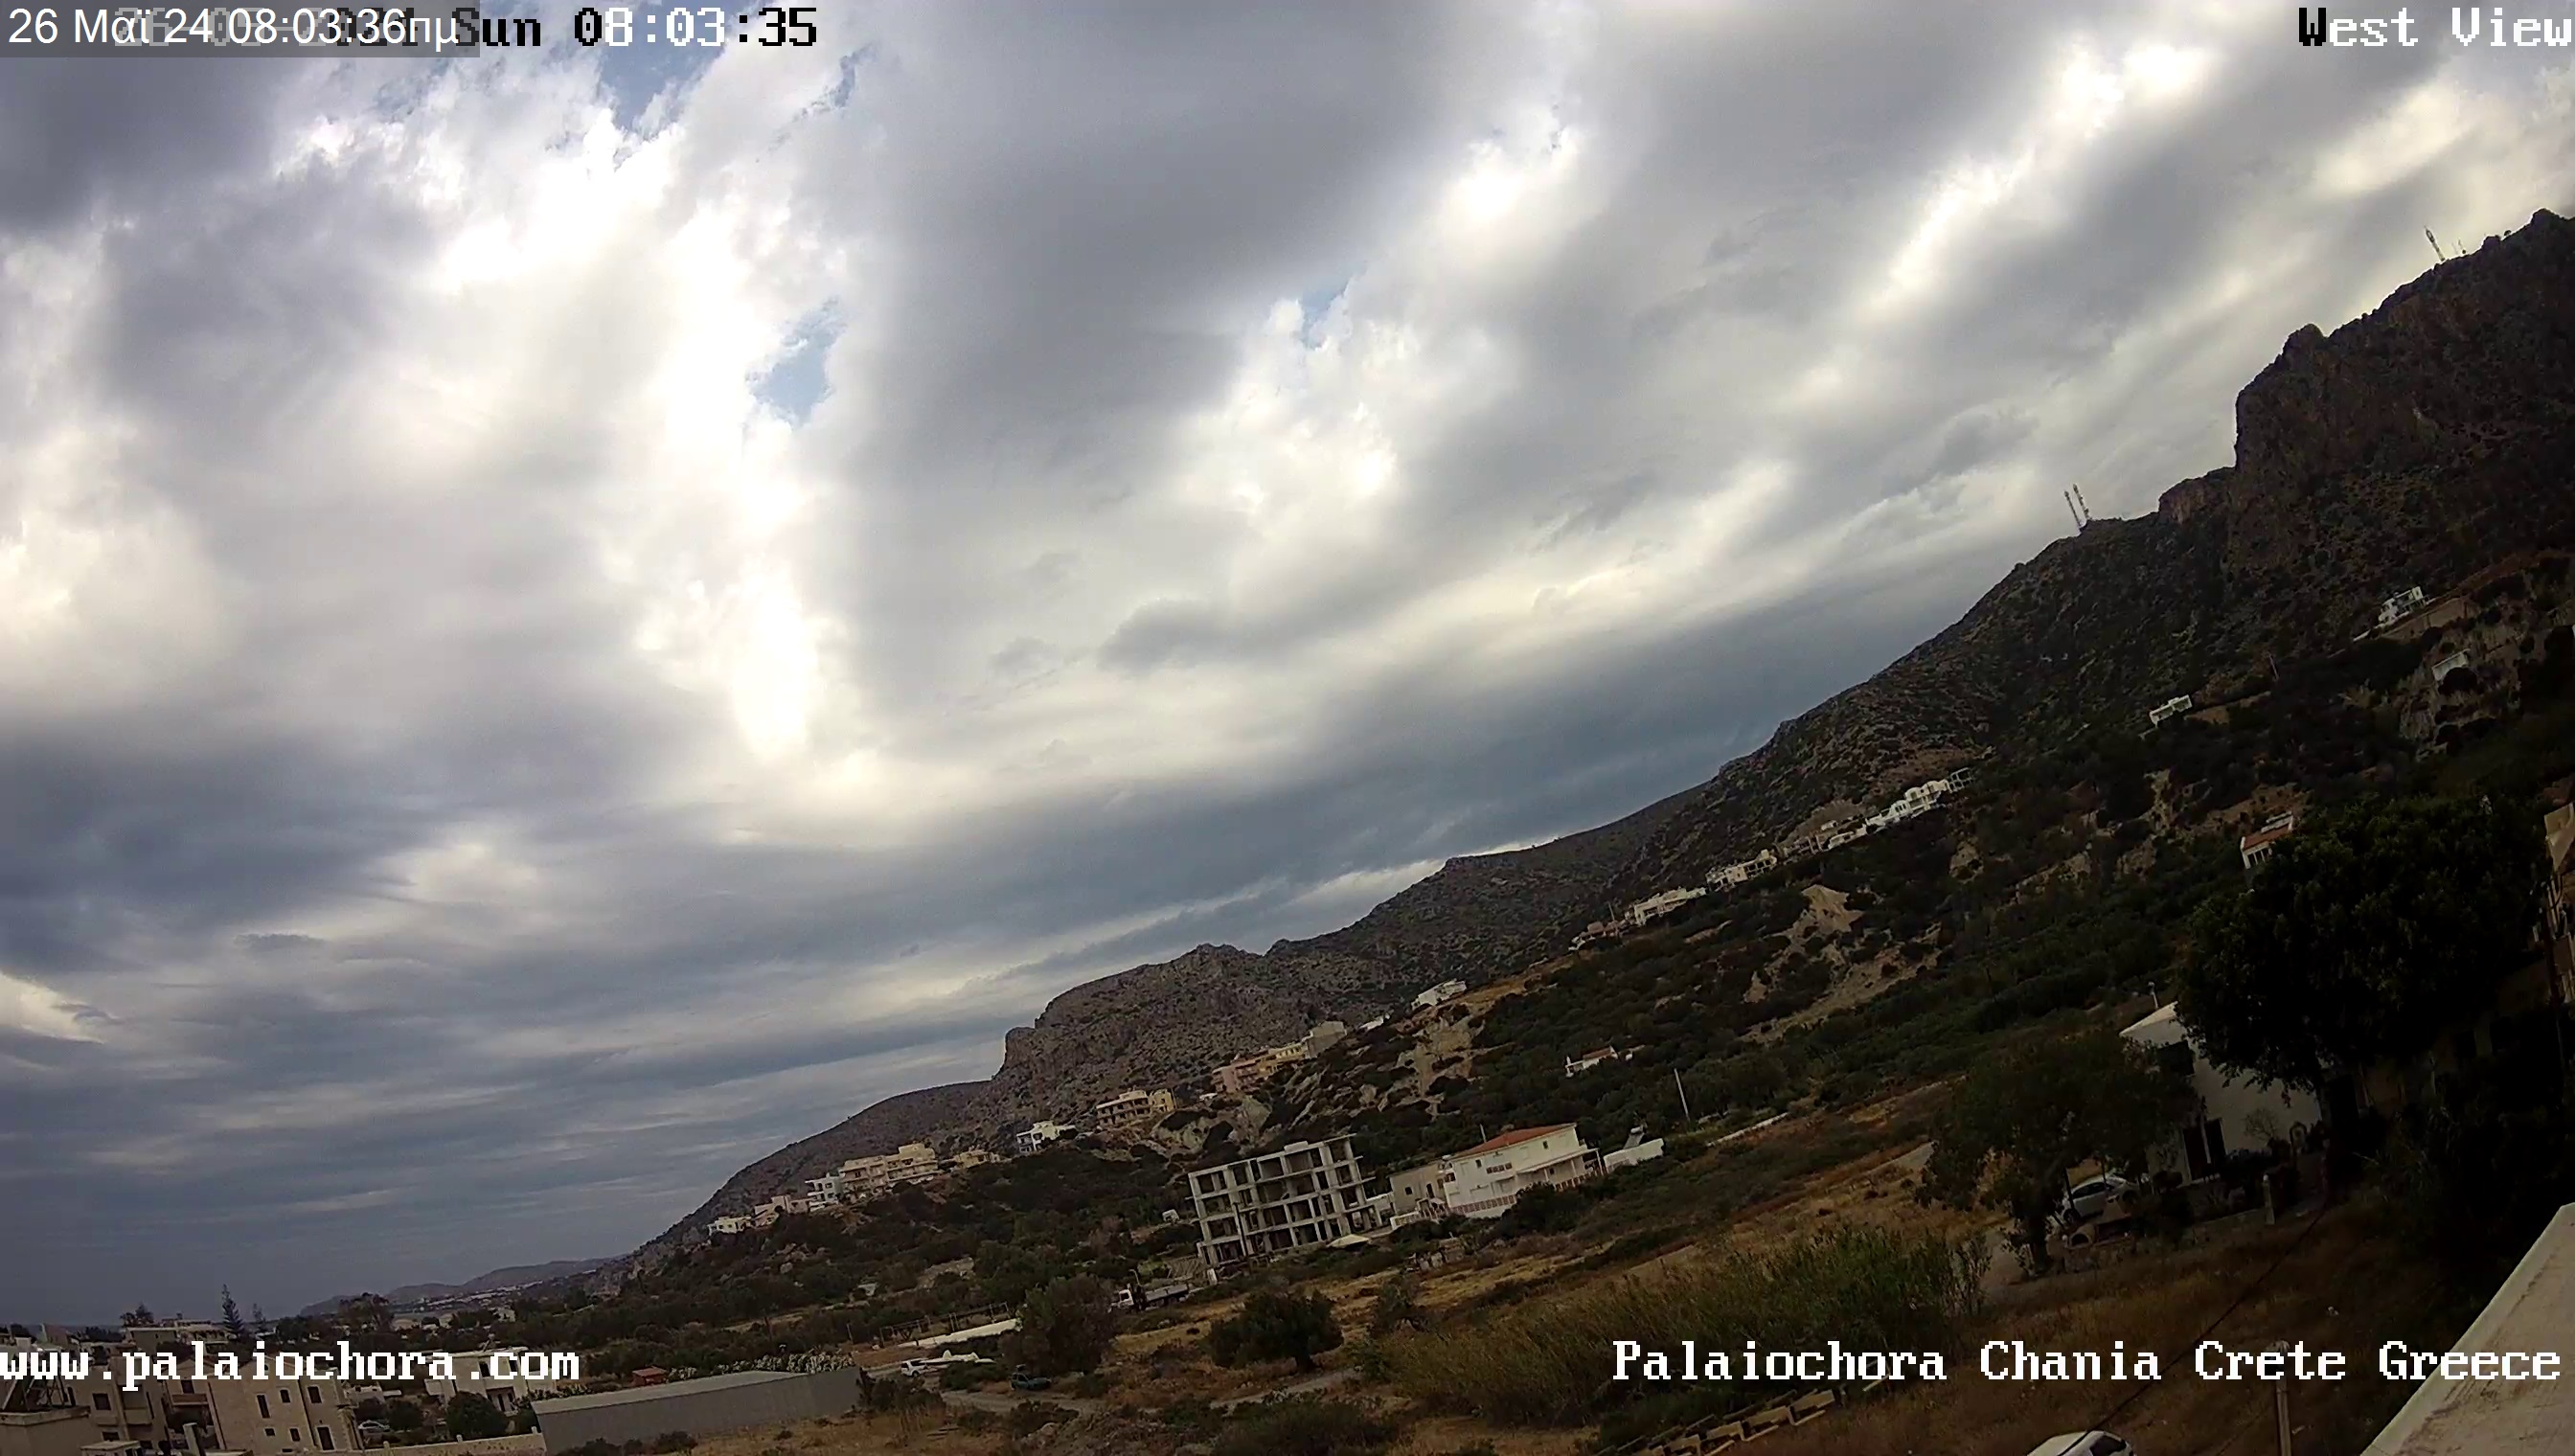 Palaiochora (Creta) Ven. 08:08